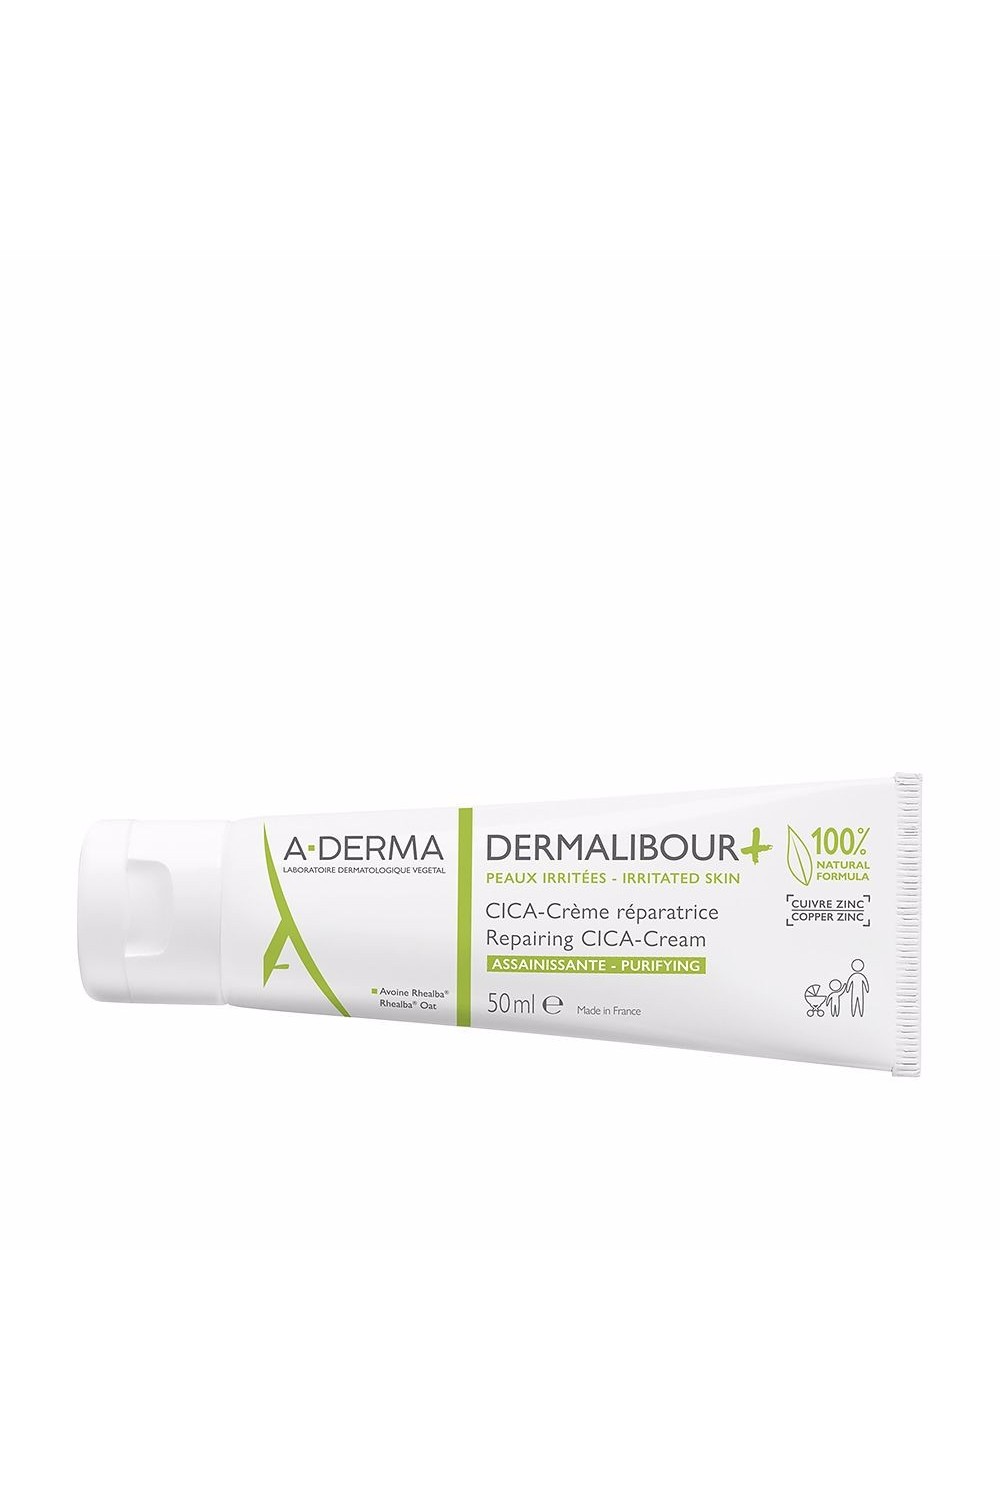 A-DERMA - A Derma Dermalibour+ Repairing Cream 50ml